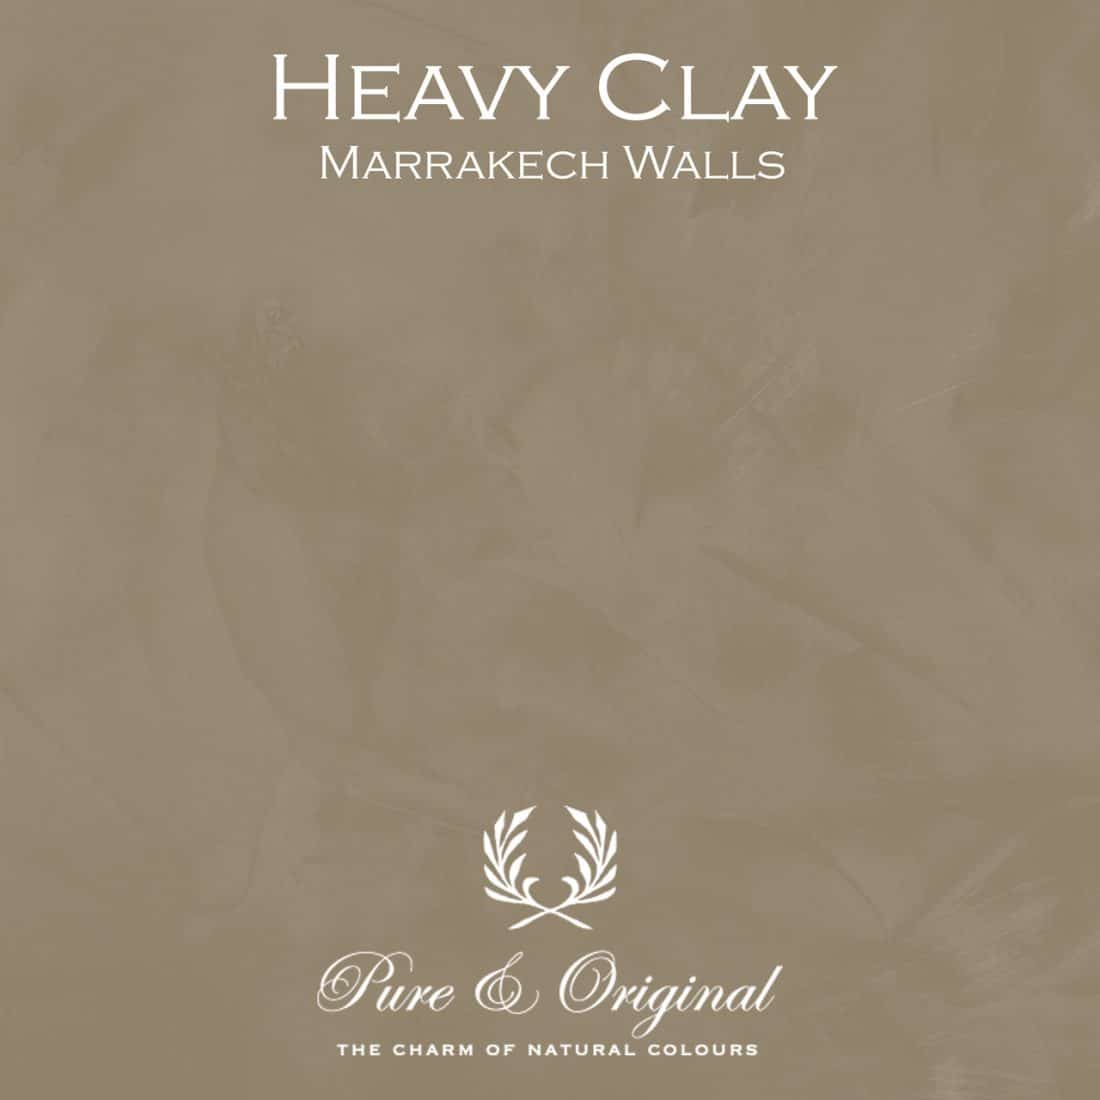 Heavy Clay Marrakech Walls Pure Original